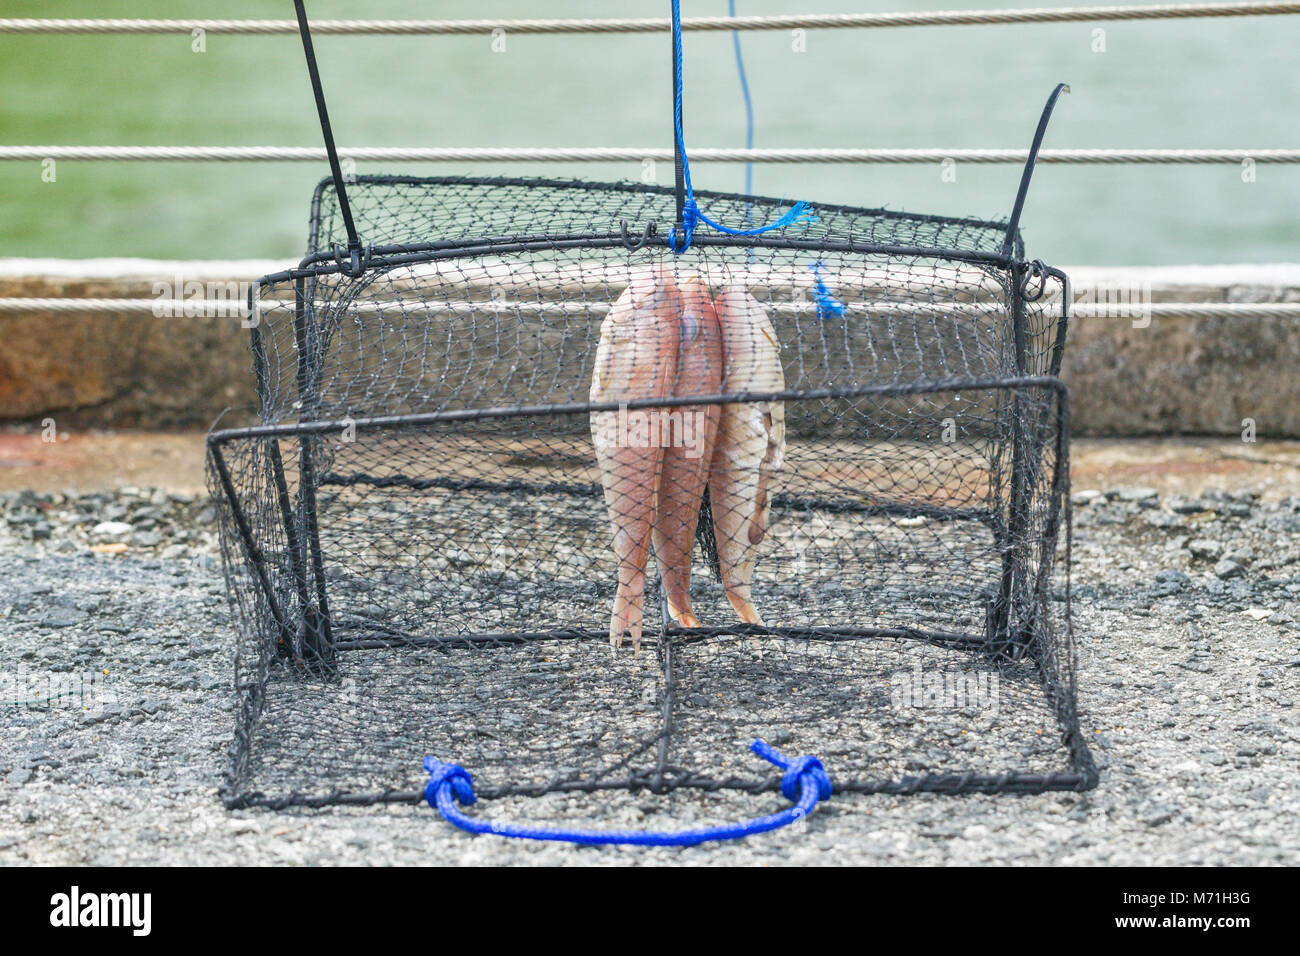 Les pièges à poissons illégales causent la mort de loutres. Banque D'Images